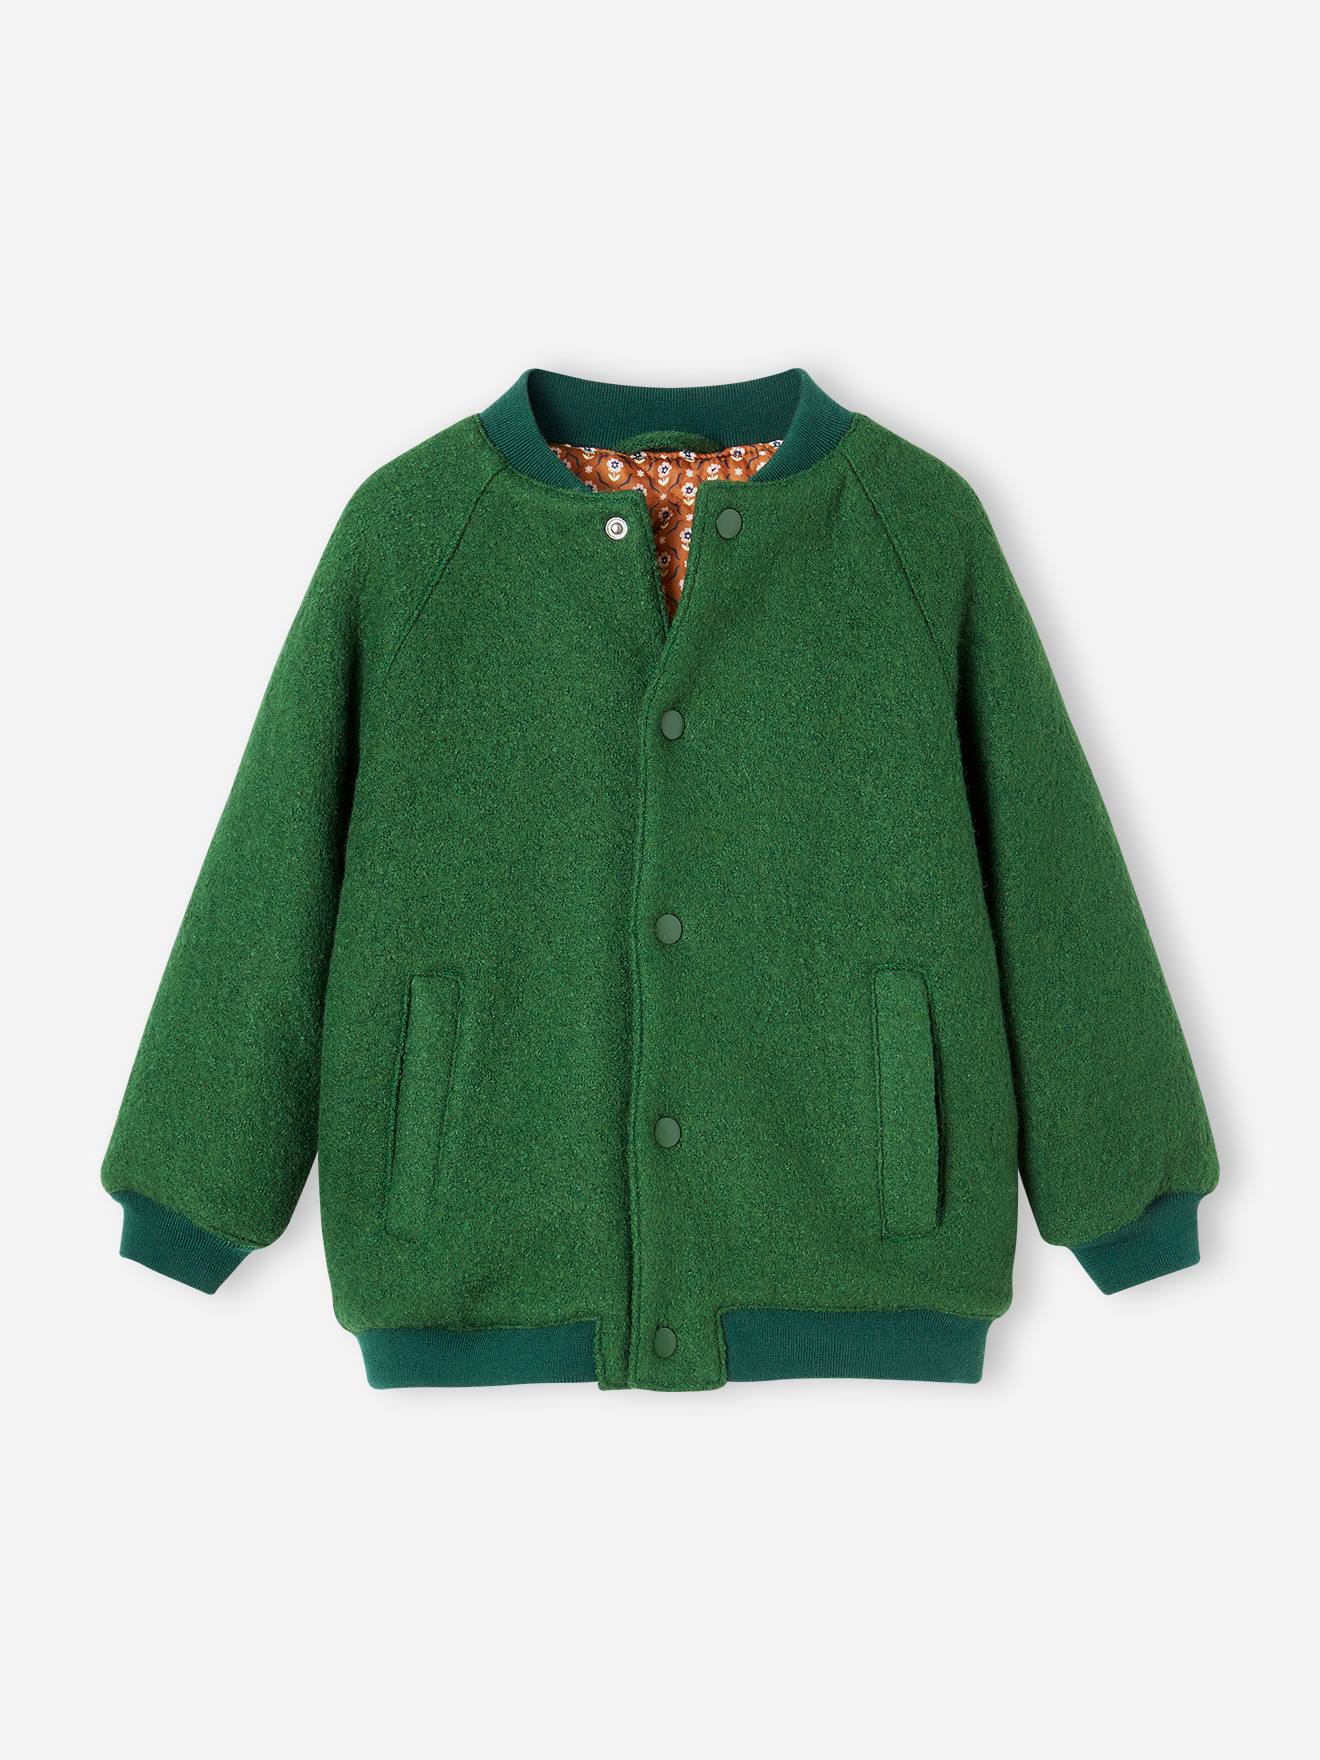 Manteau style teddy fille en lainage bouclettes vert anglais